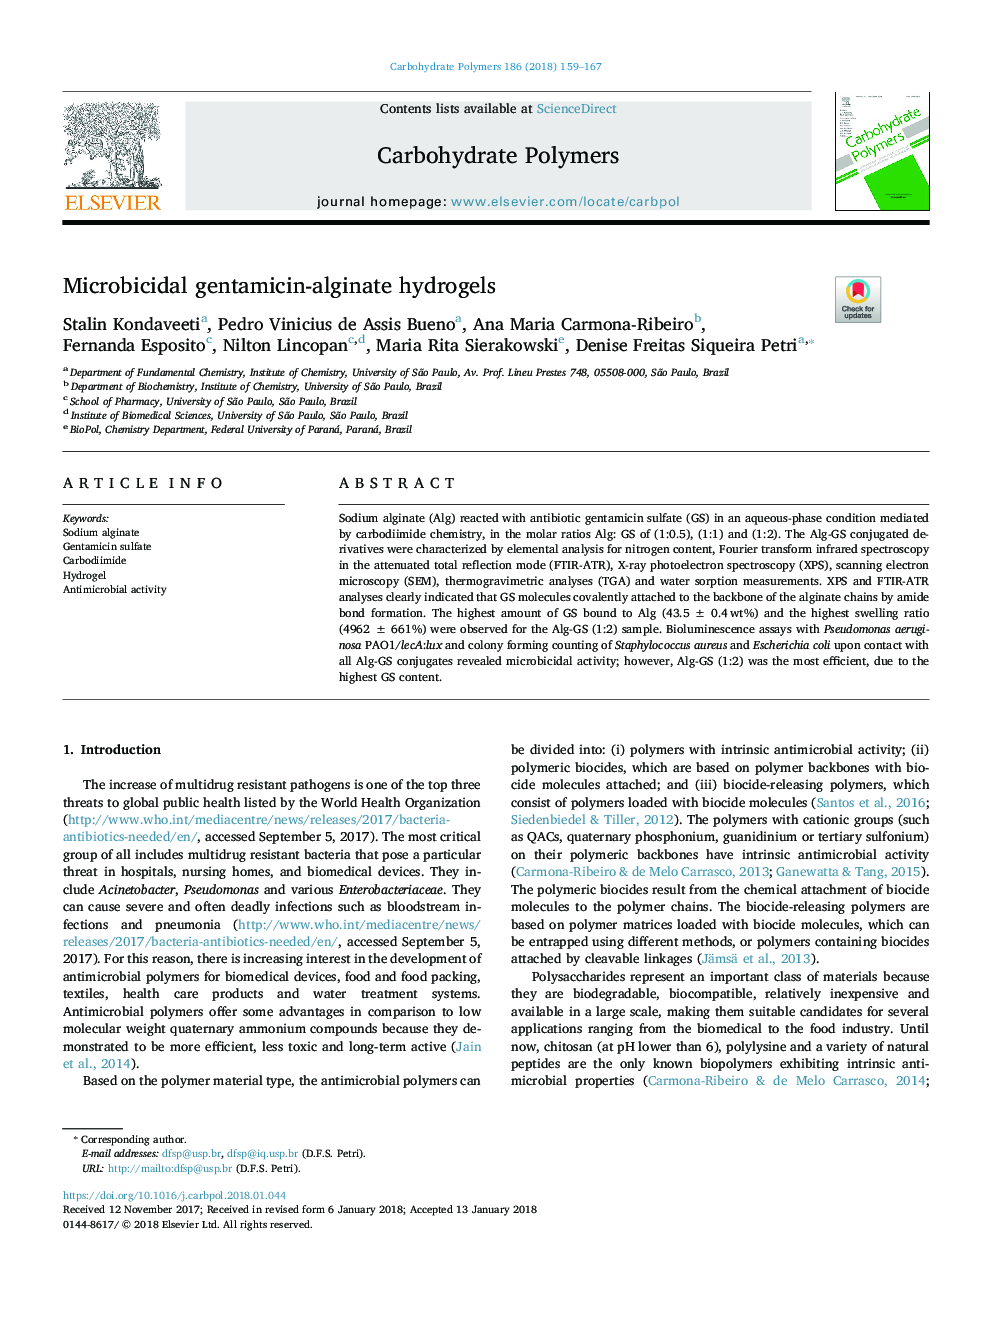 هیدروژلهای جنتامایسین-آلژینات میکروبیسیالیزه 